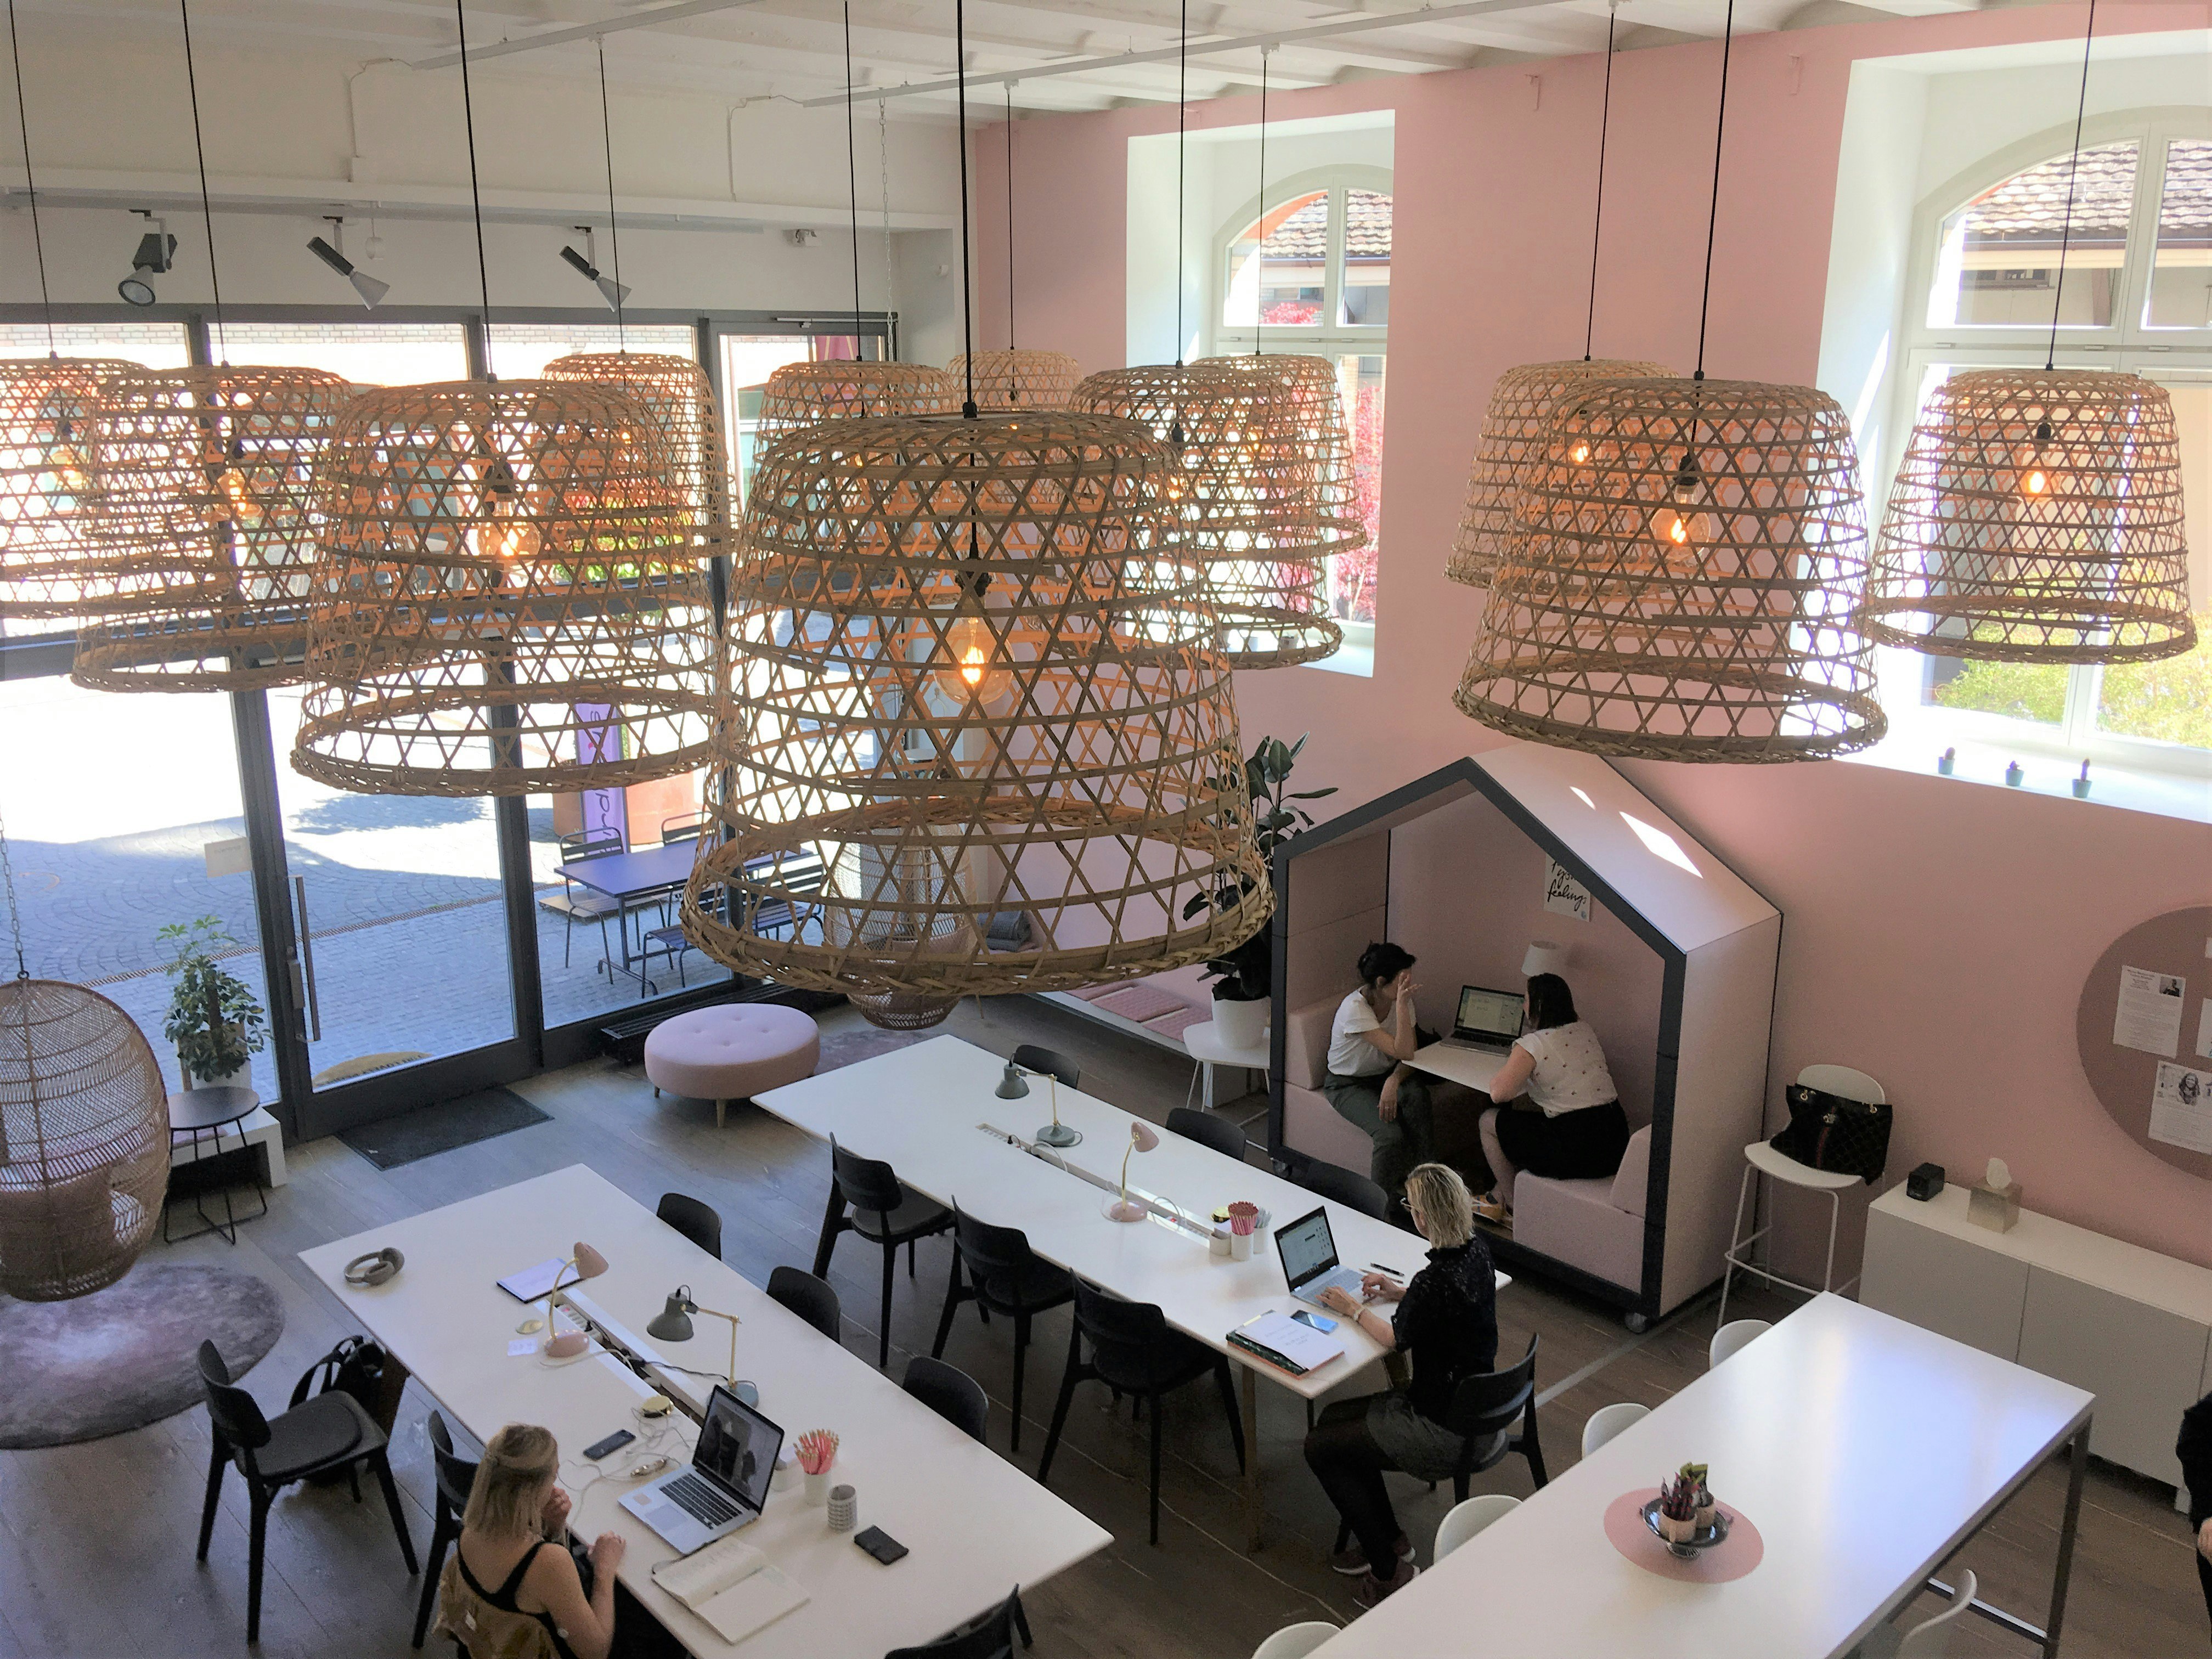 Ser man ner från en mezzanin till Birdhaus högt i tak: kvinnor arbetar vid vita bord, det finns en rosa vägg med två höga fönster och många överdimensionerade flätade lampskärmar ovanför.